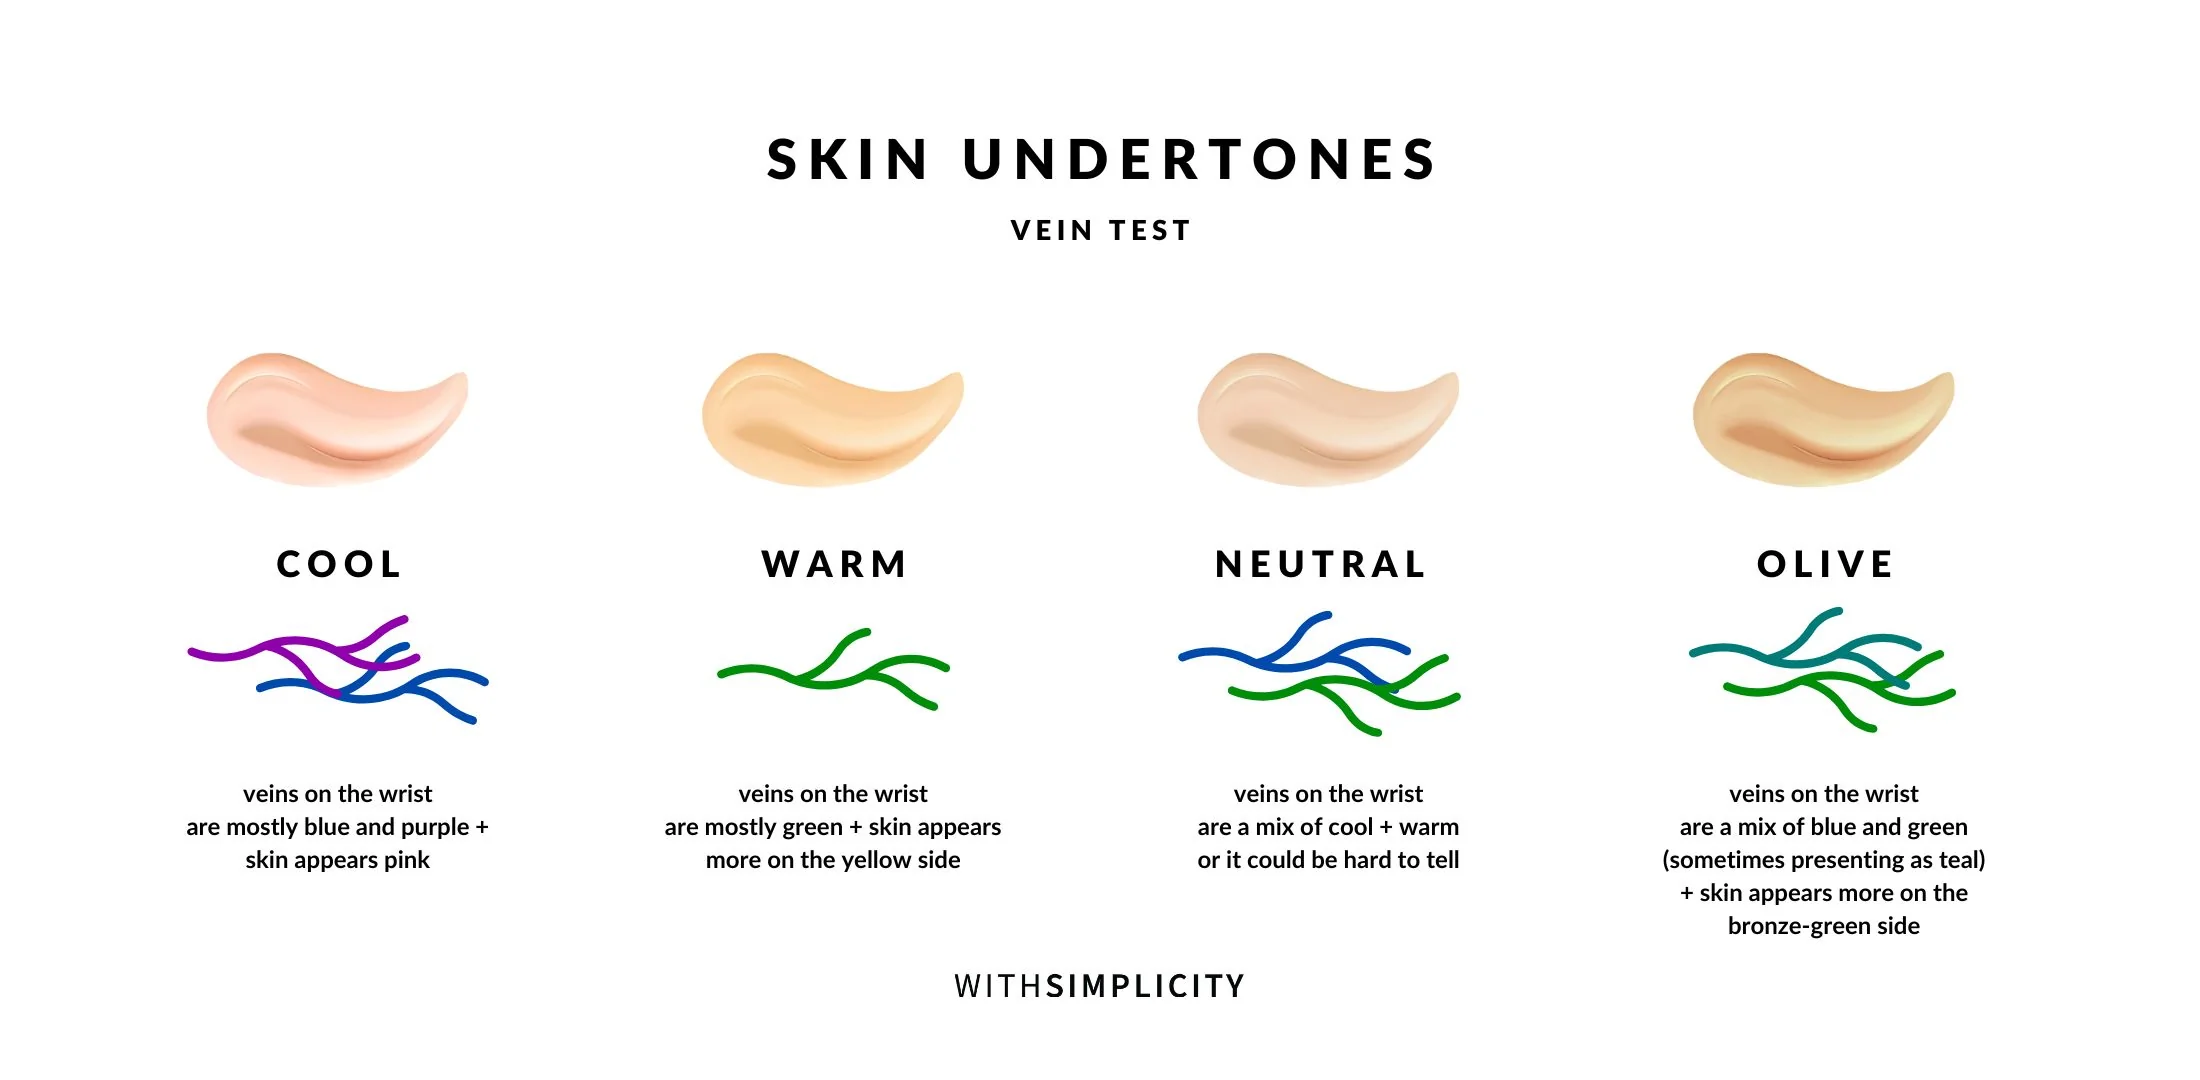 انواع رنگ پوست - تناژ مختلف پوست 